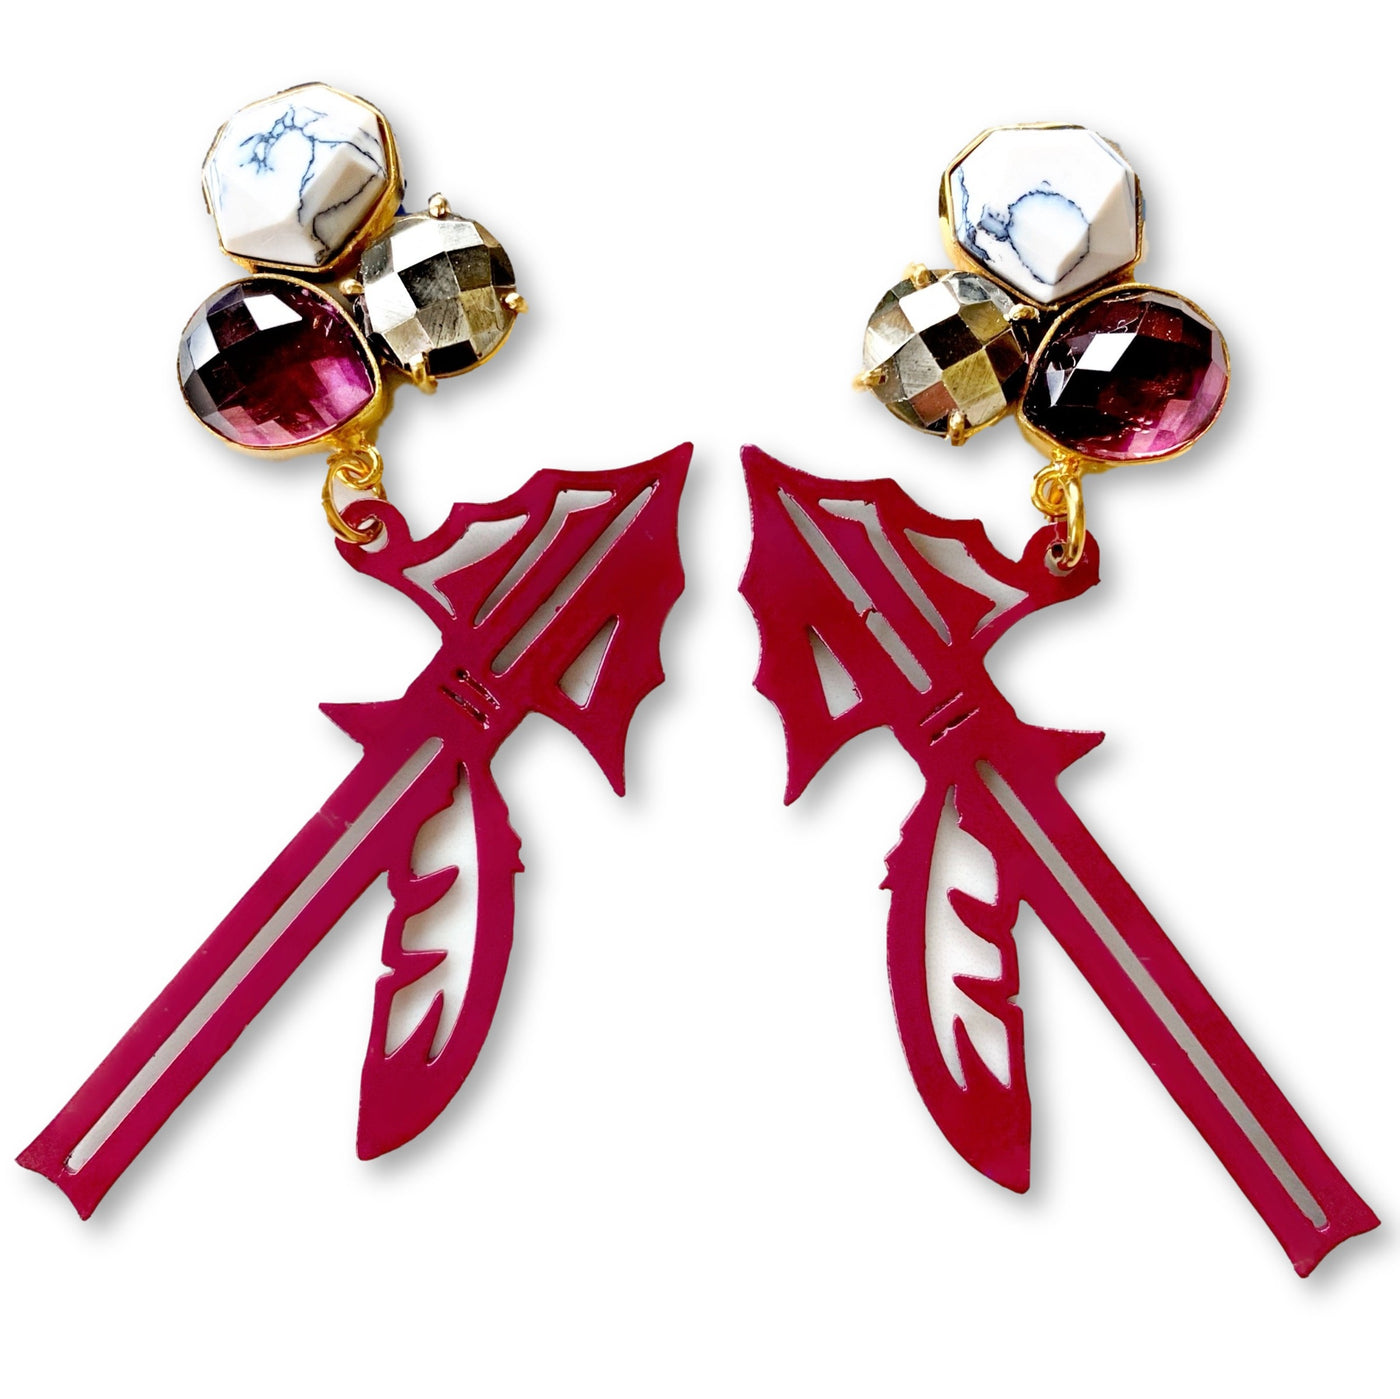 FSU Garnet Spear Earrings with 3 Gemstones